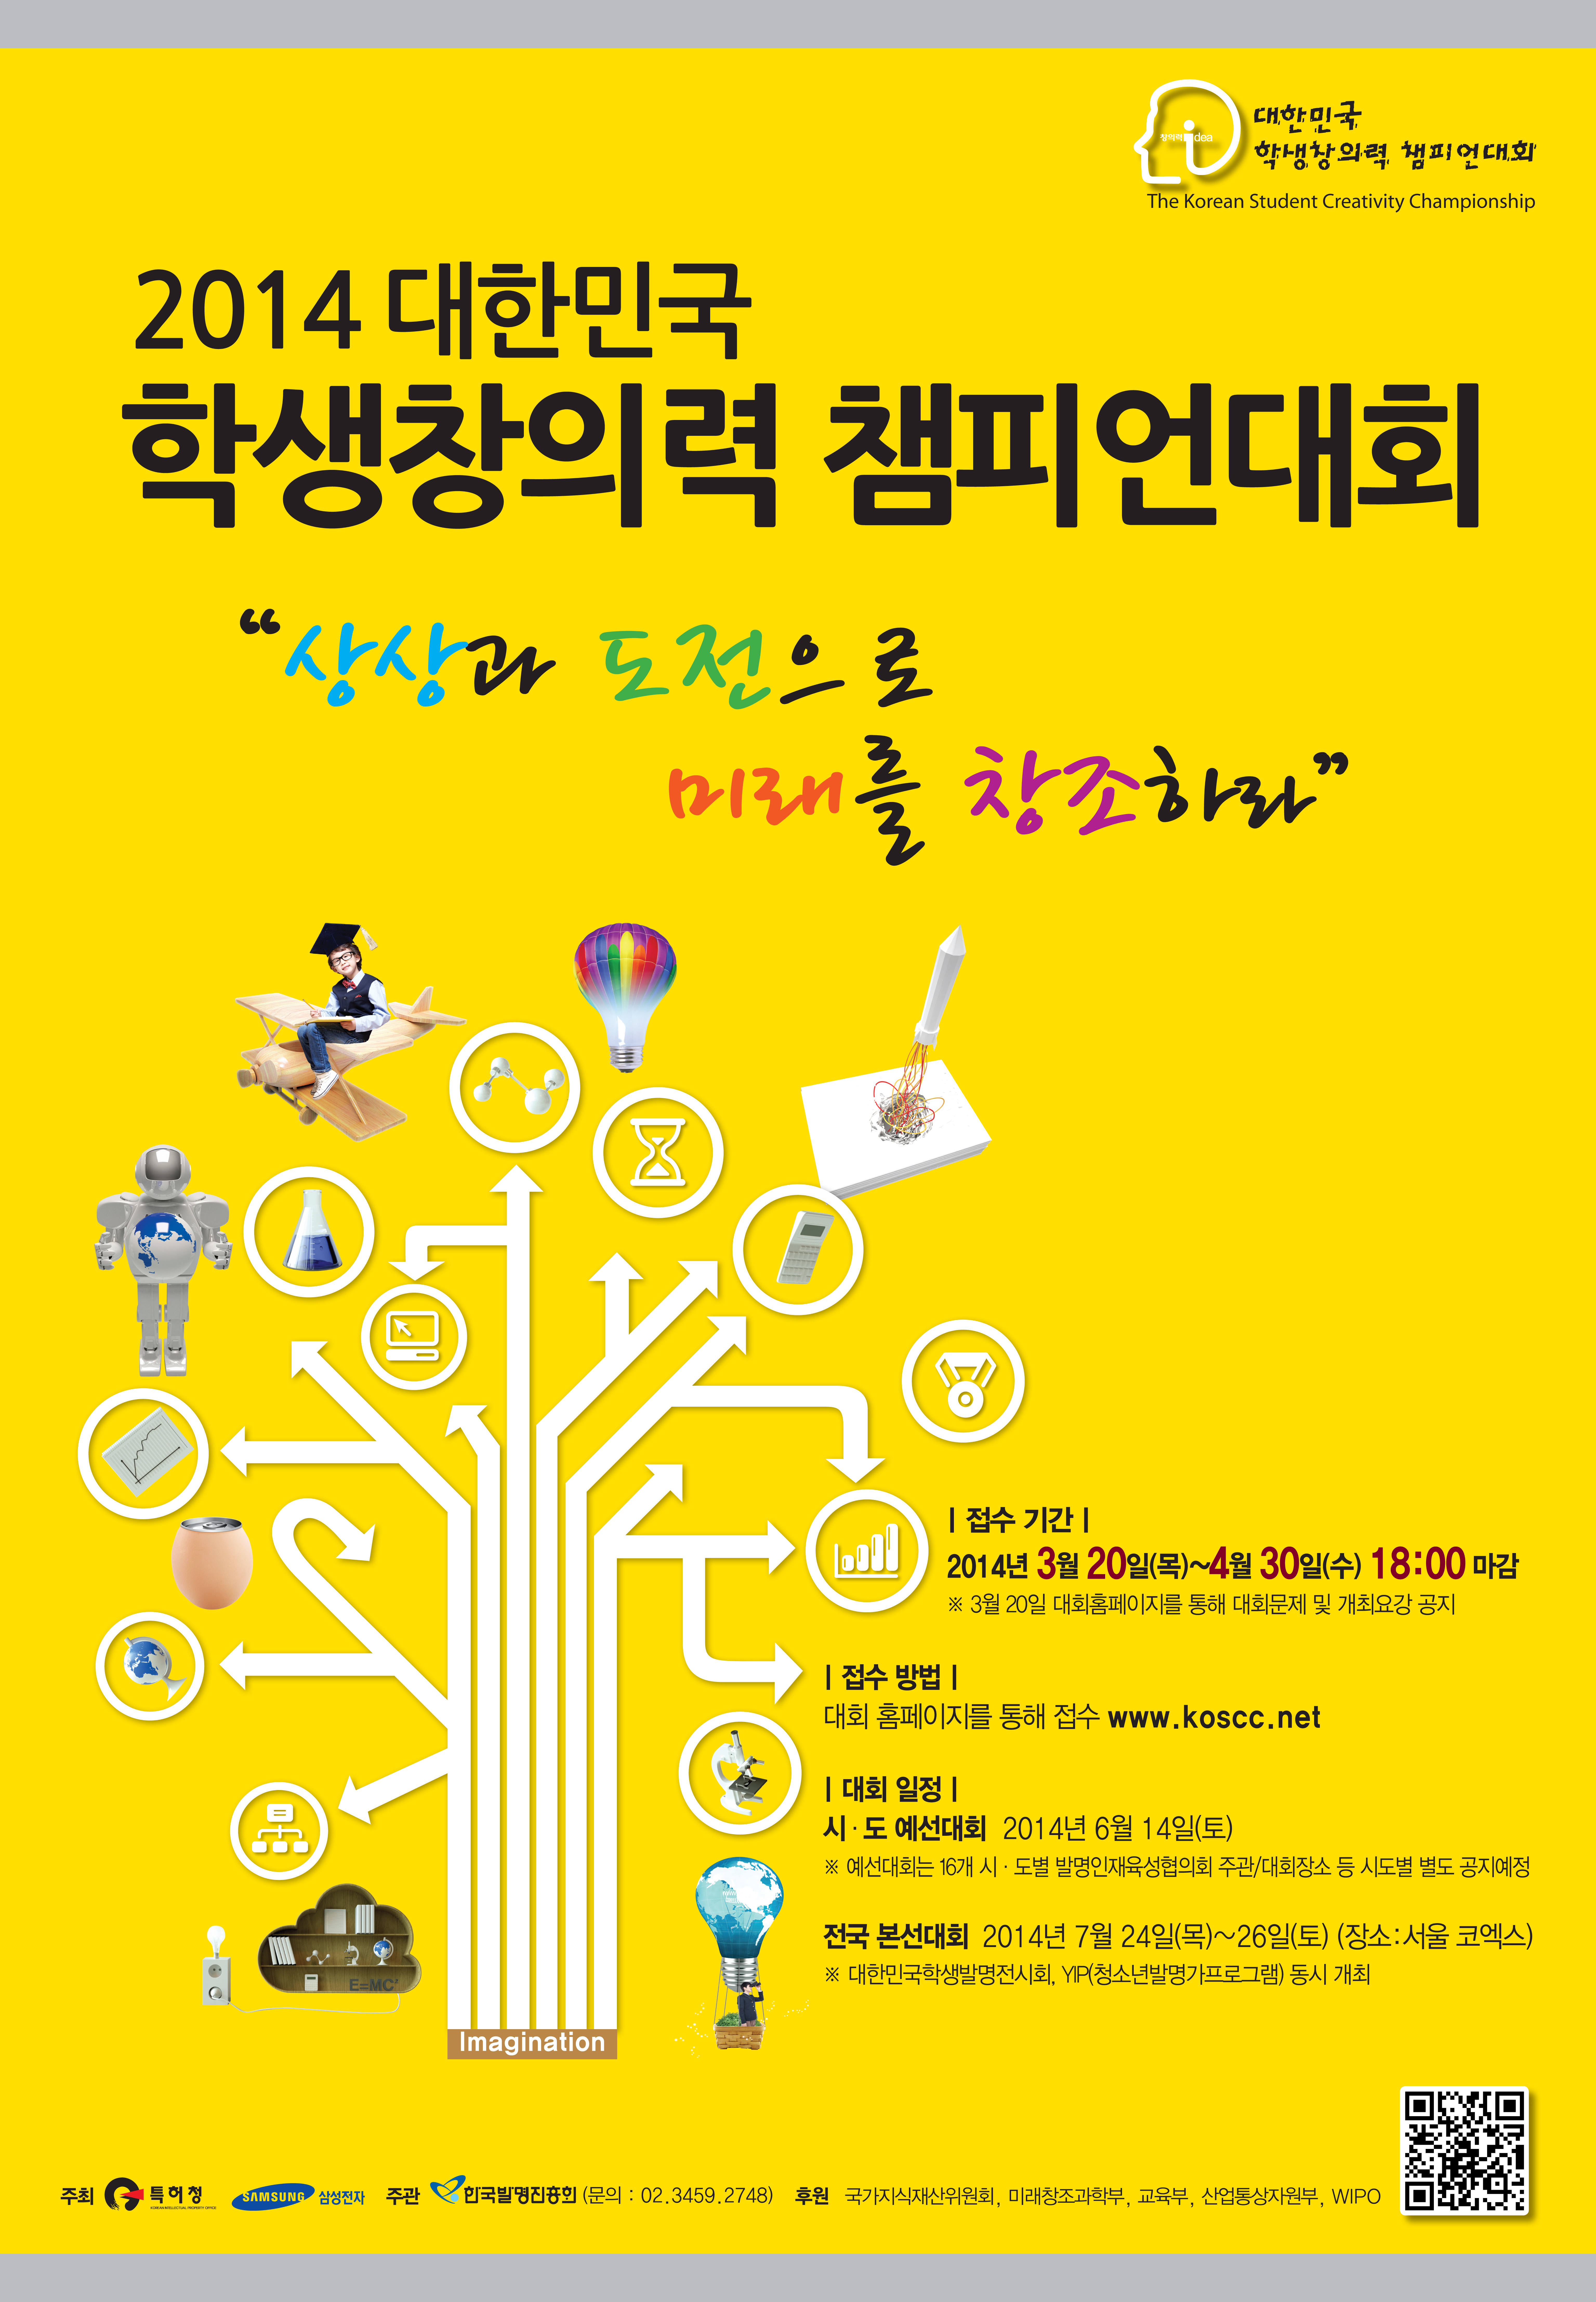 2014 포스터(창챔).jpg : ‘2014 대한민국 학생 창의력 챔피언대회' 참가신청 모집(~4.30까지)